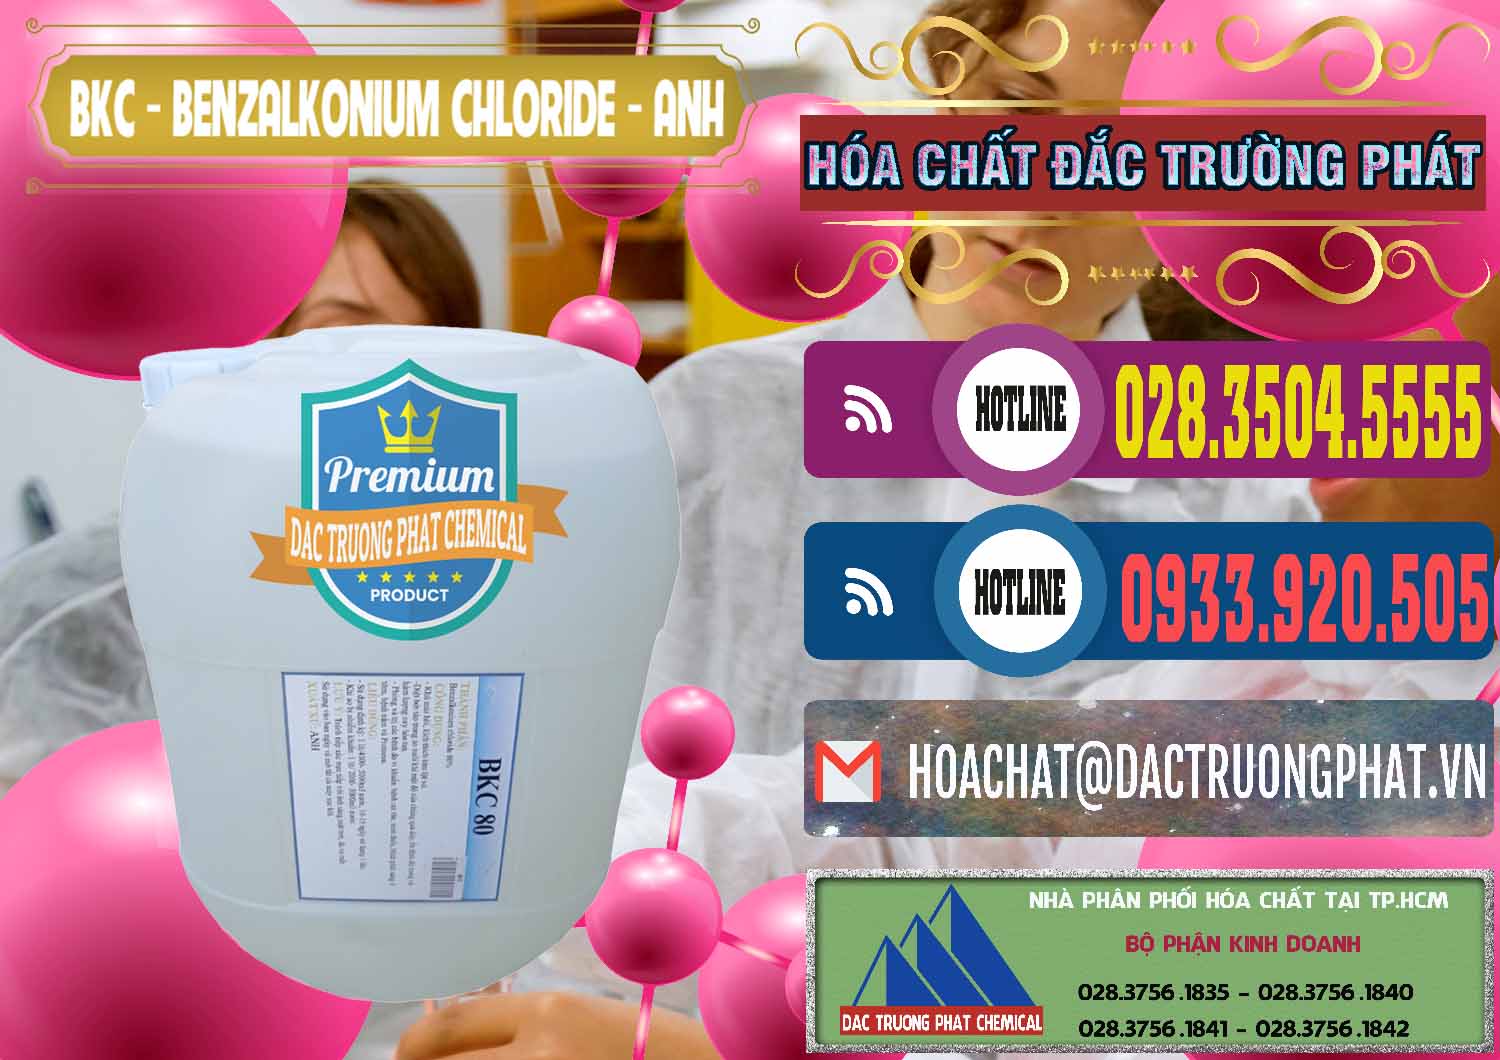 Chuyên nhập khẩu - bán BKC - Benzalkonium Chloride Anh Quốc Uk Kingdoms - 0415 - Nơi chuyên cung cấp và bán hóa chất tại TP.HCM - muabanhoachat.com.vn